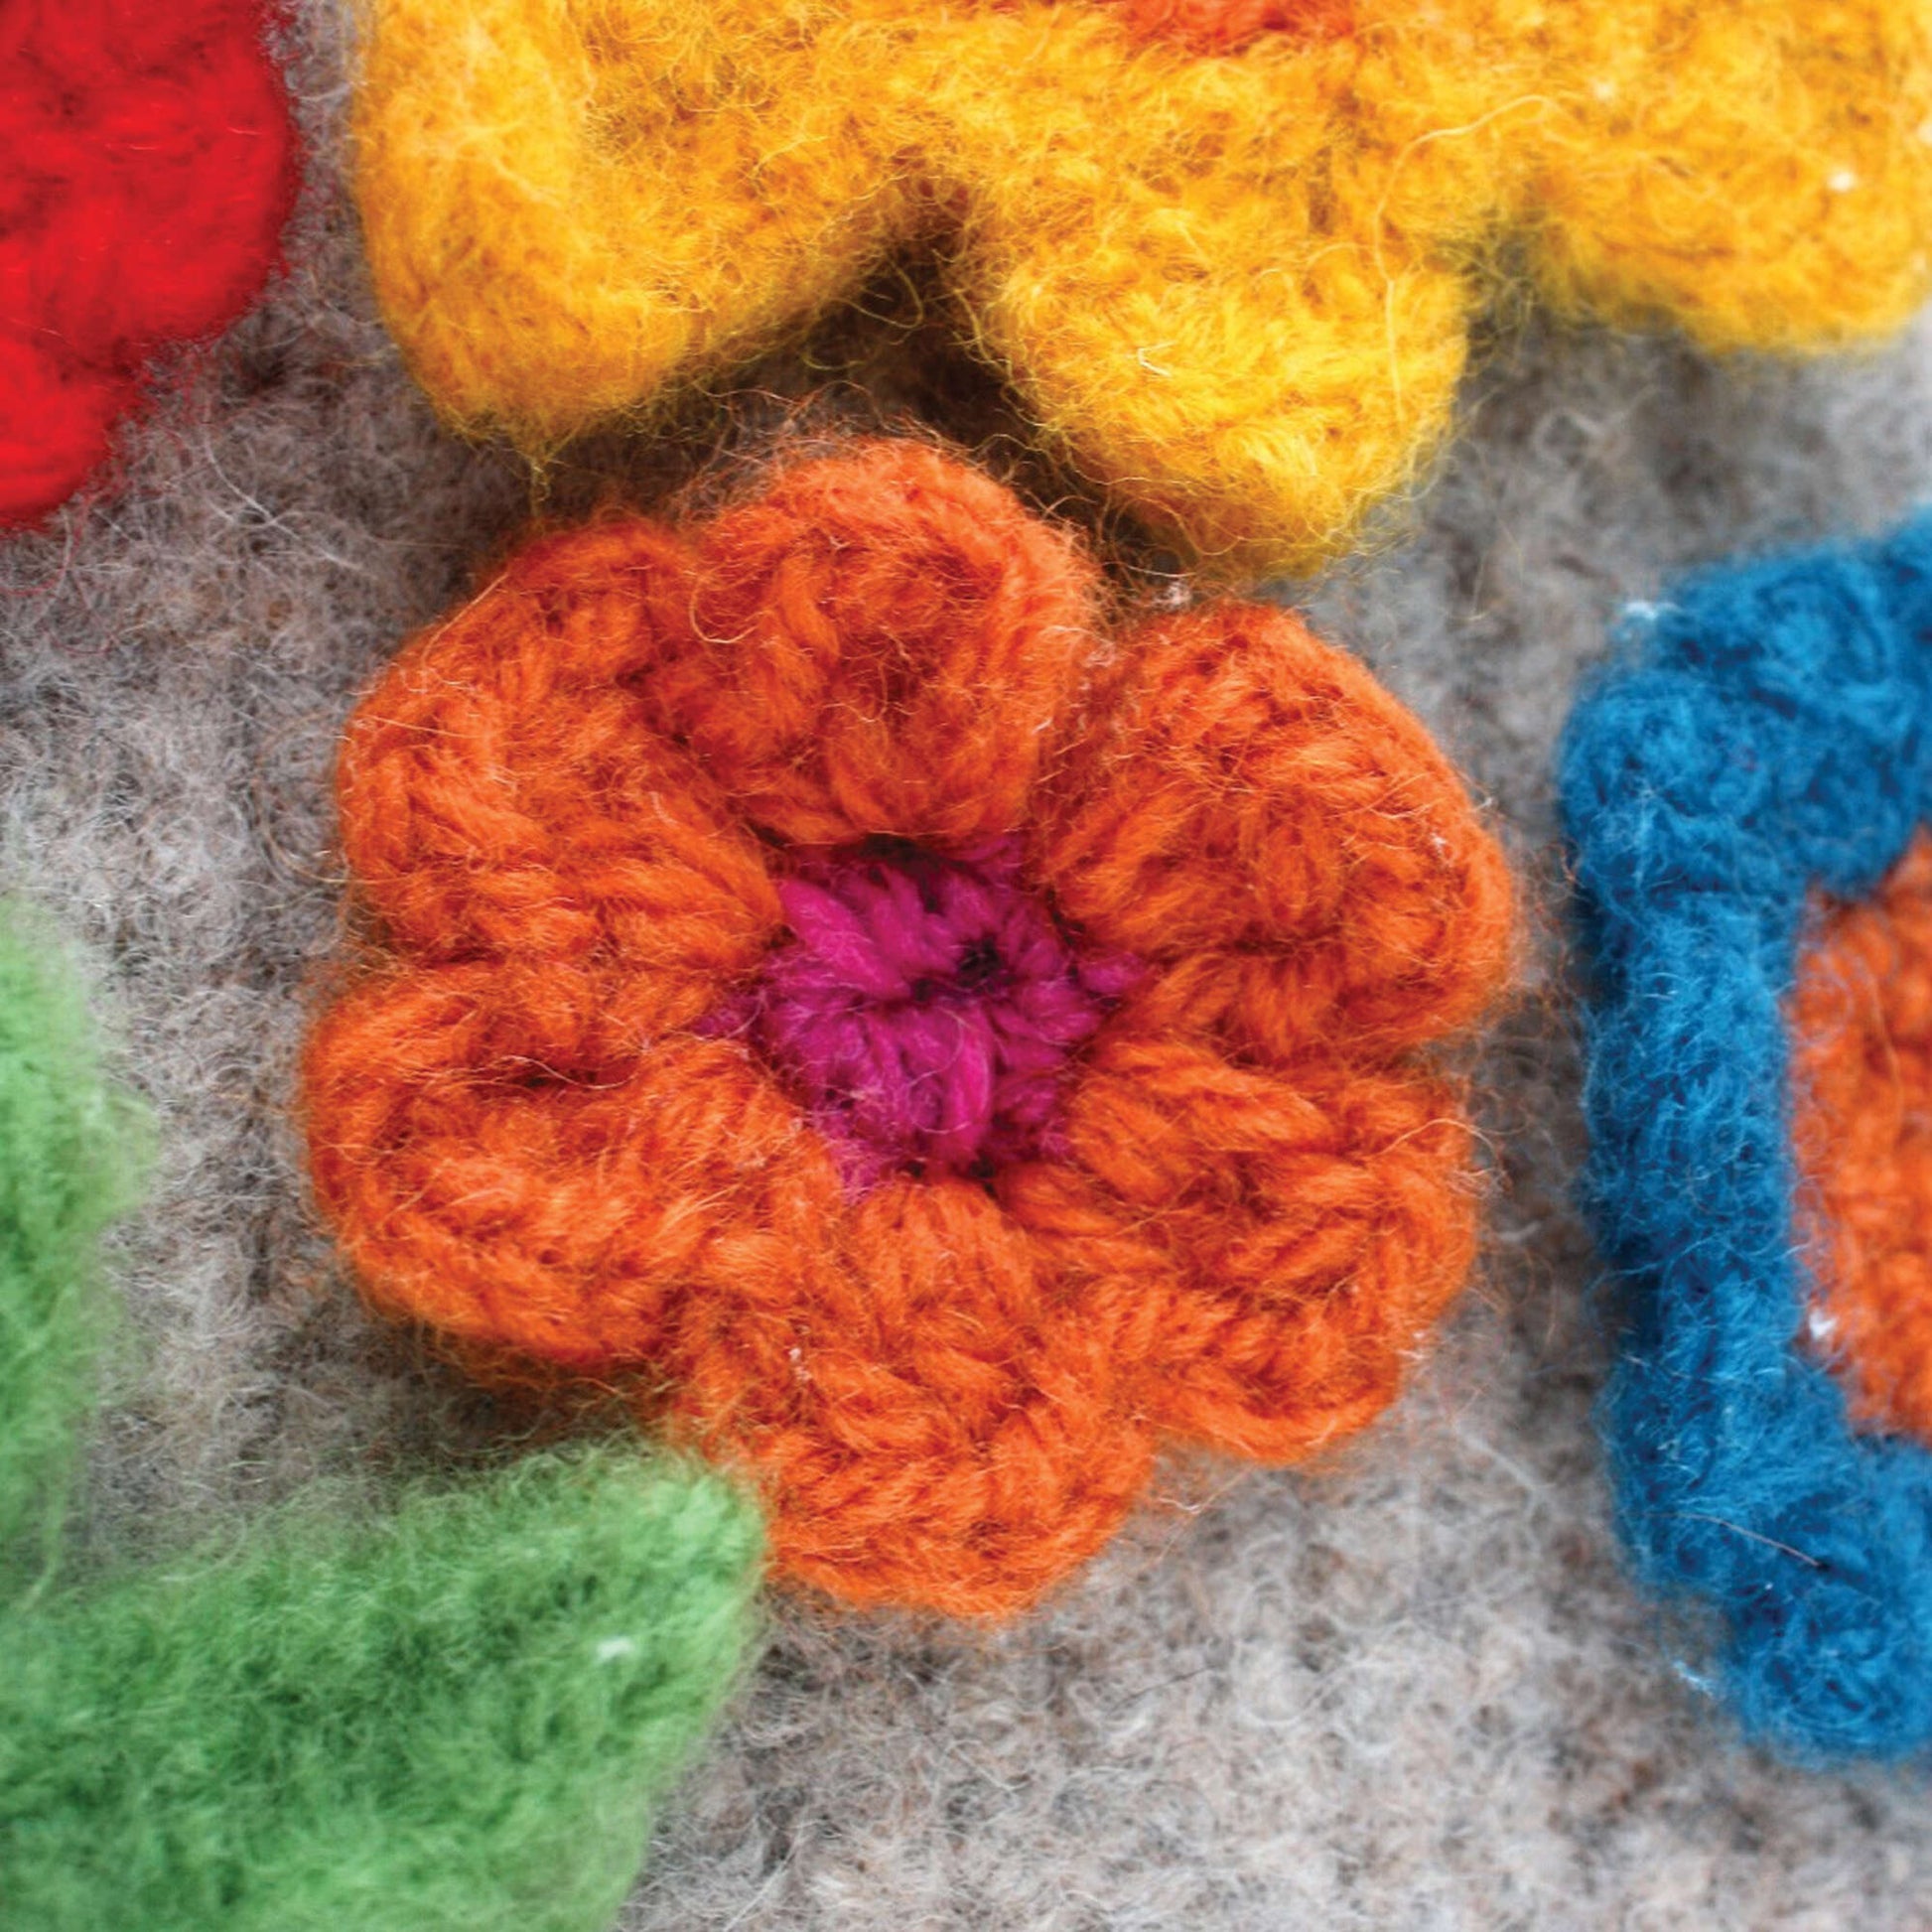 Free Patons Crochet Felt And Flower Tea Cozy Pattern